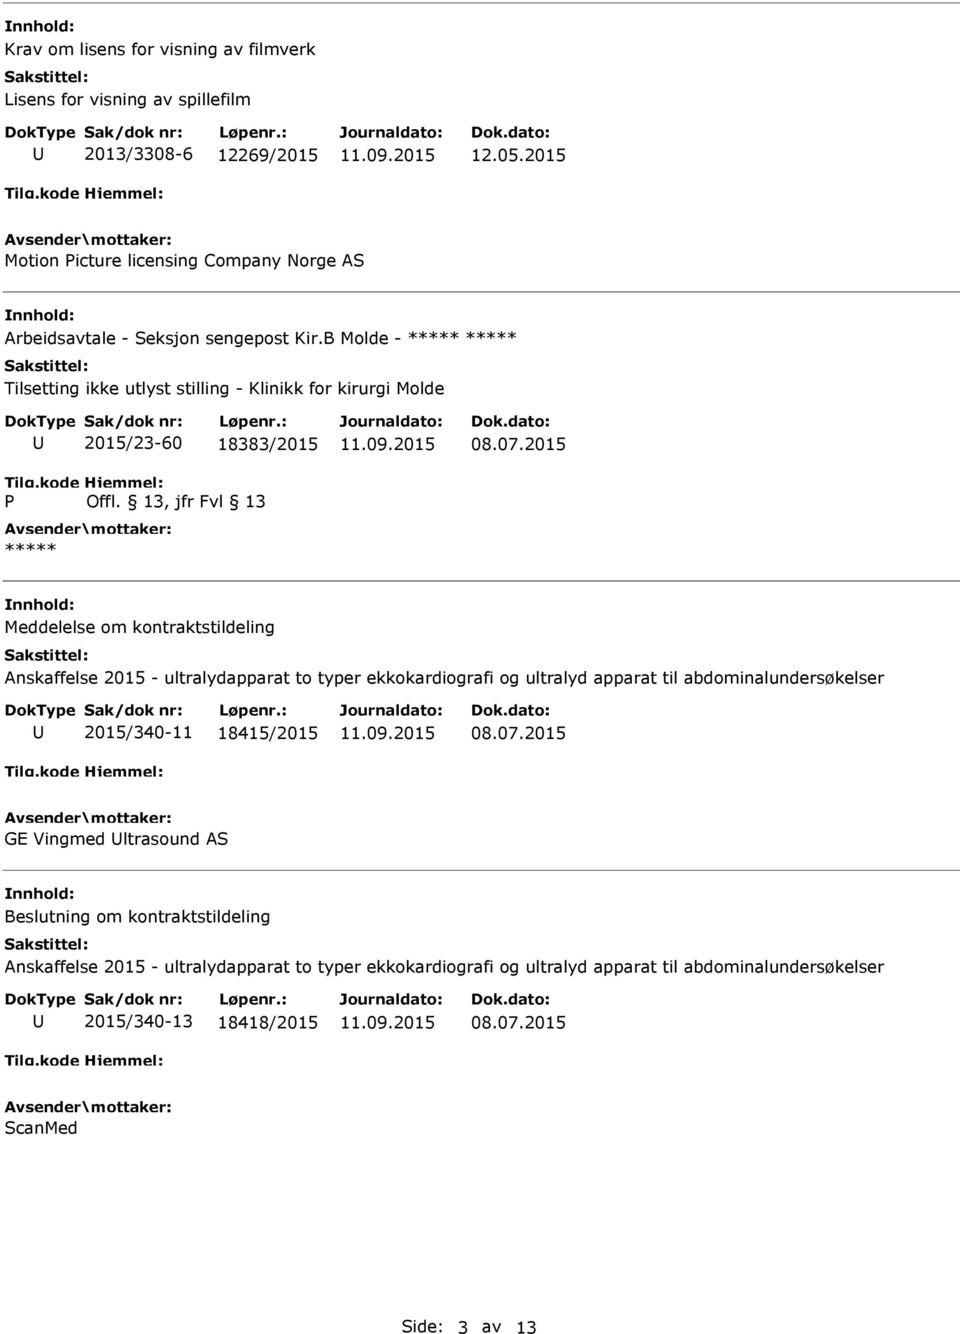 B Molde - Tilsetting ikke utlyst stilling - Klinikk for kirurgi Molde P 2015/23-60 18383/2015 Offl. 13, jfr Fvl 13 08.07.